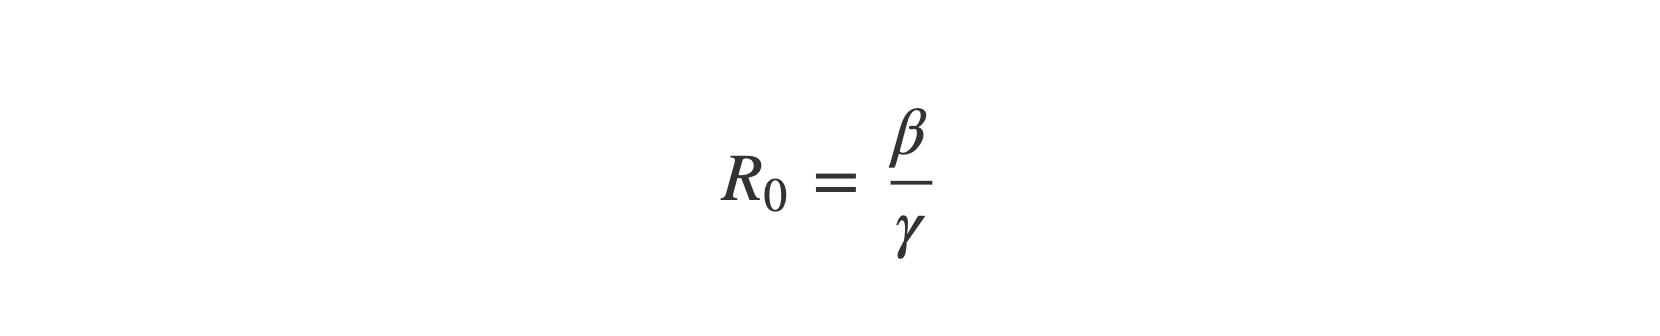 R zero equals beta over gamma